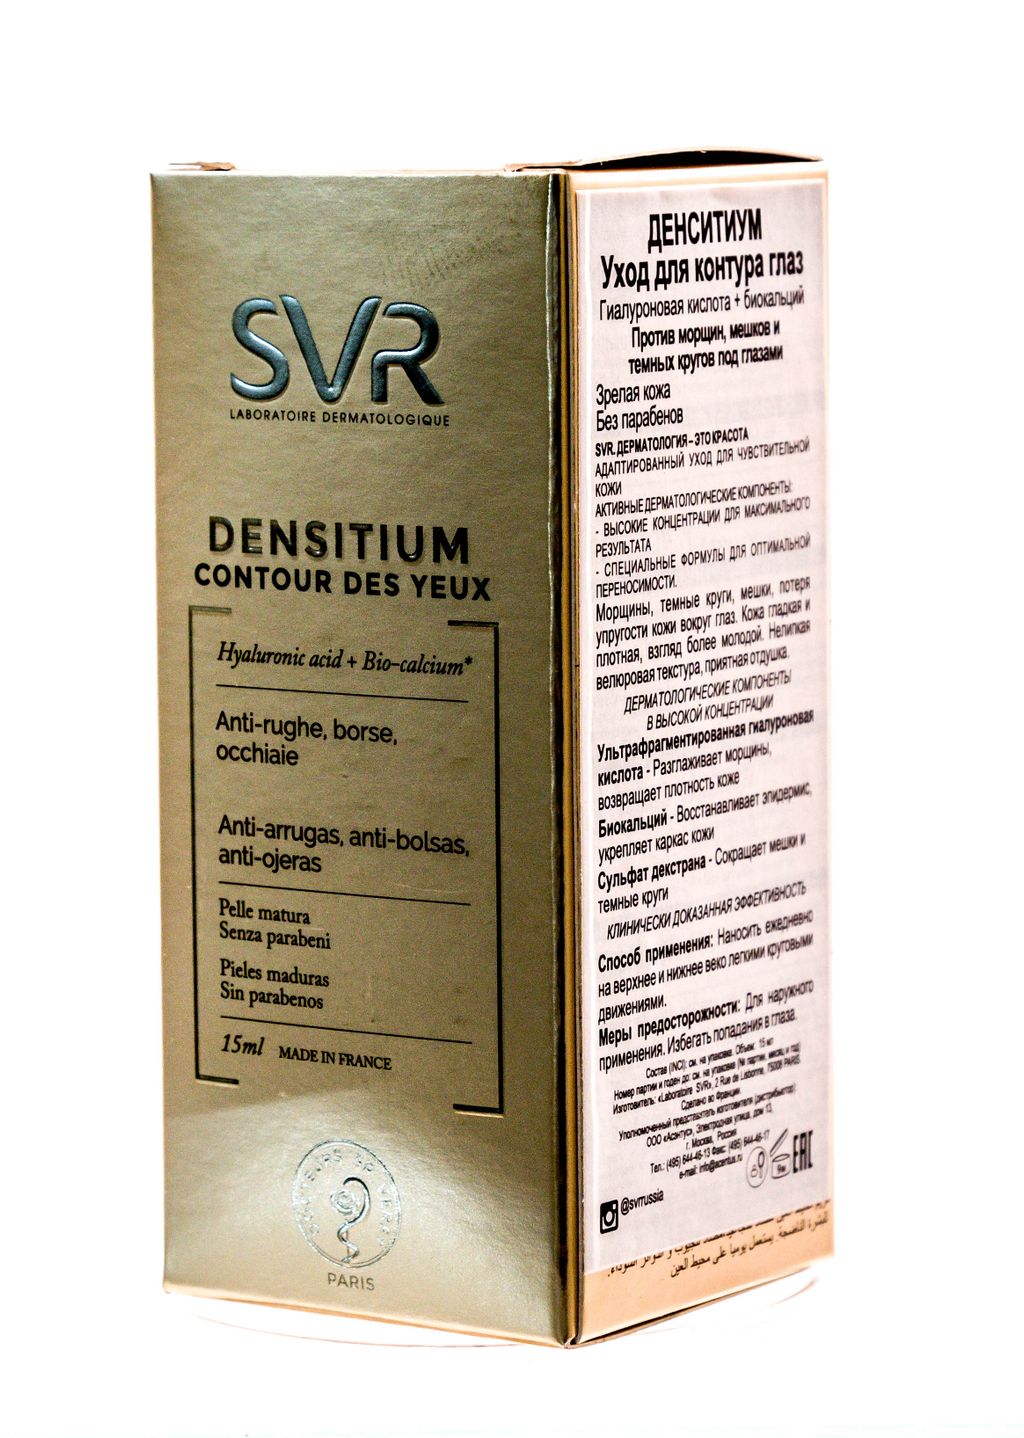 SVR Densitium Крем для контура глаз, крем, 15 мл, 1 шт.